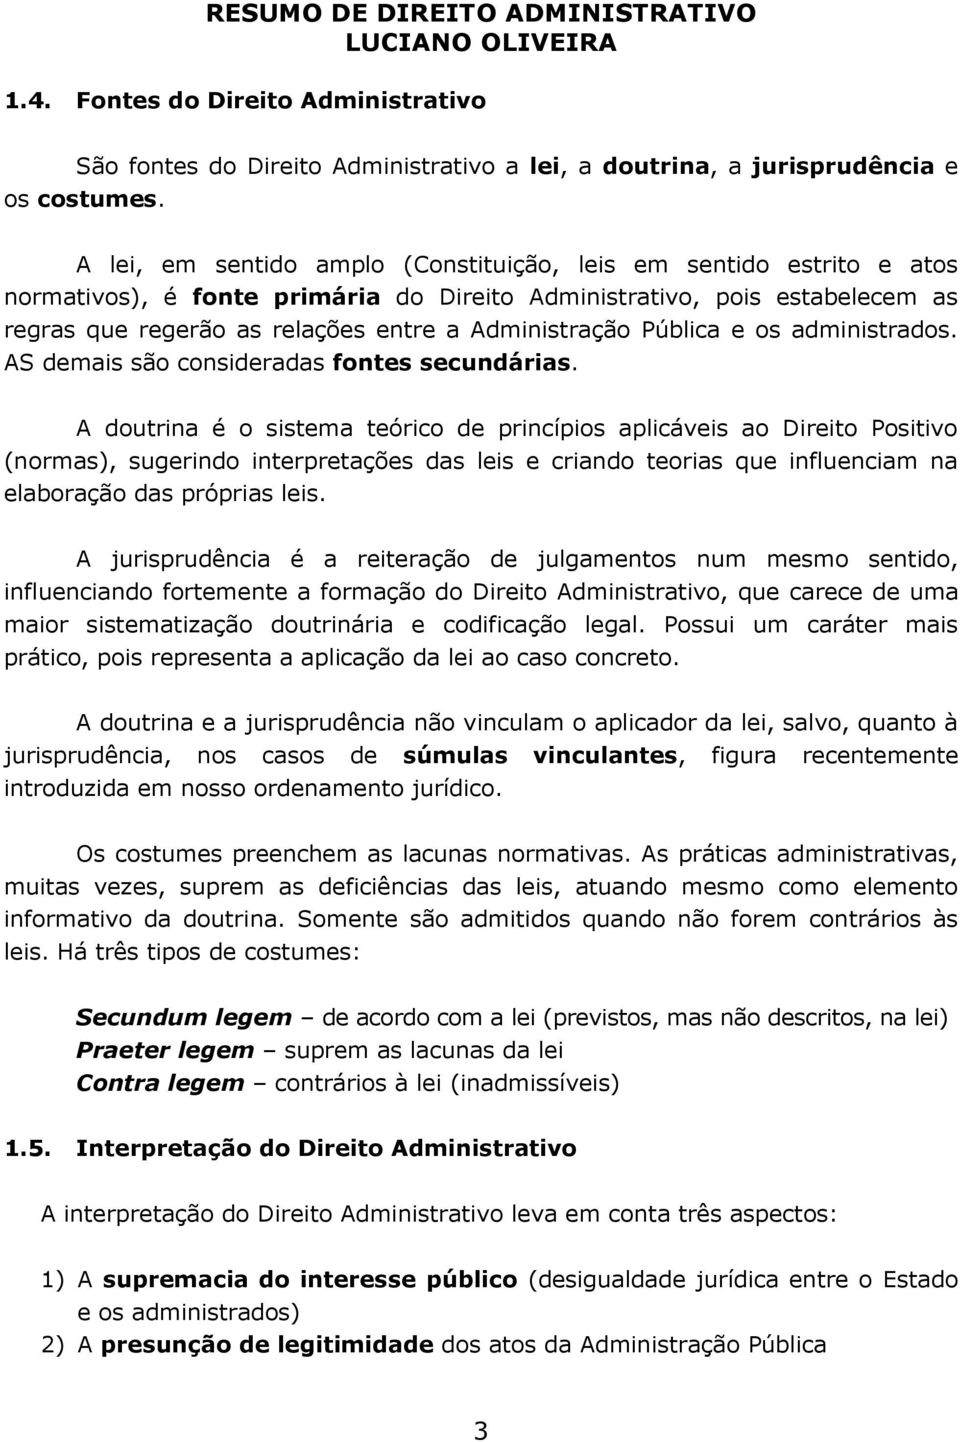 Direito administrativo brasileiro hely lopes meirelles download pdf